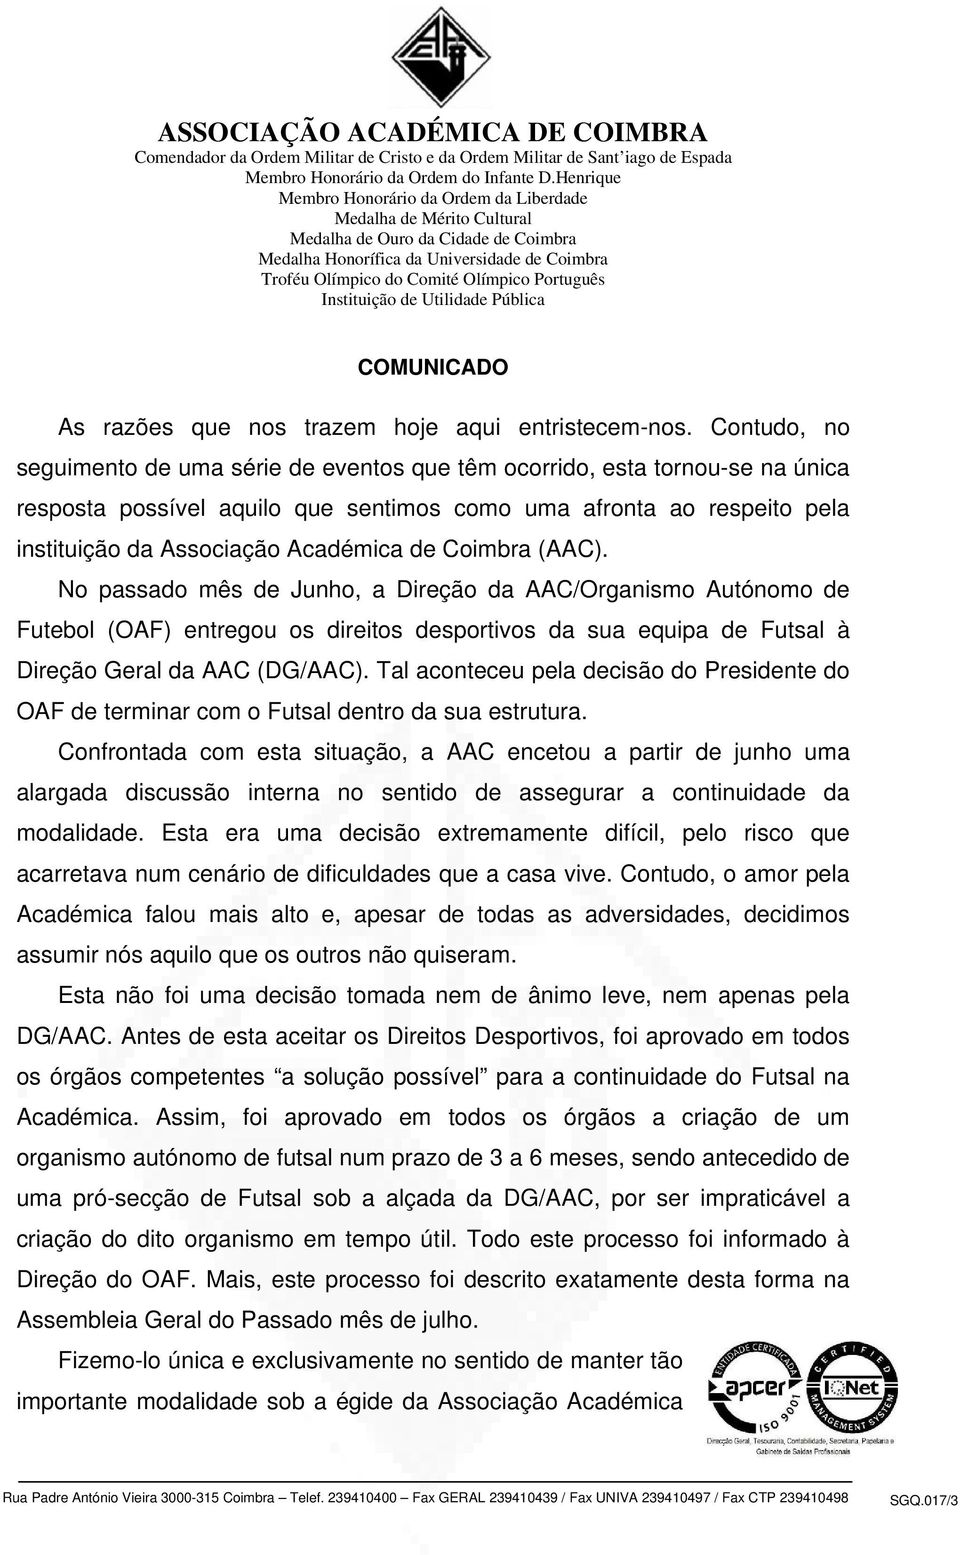 Coimbra (AAC). No passado mês de Junho, a Direção da AAC/Organismo Autónomo de Futebol (OAF) entregou os direitos desportivos da sua equipa de Futsal à Direção Geral da AAC (DG/AAC).